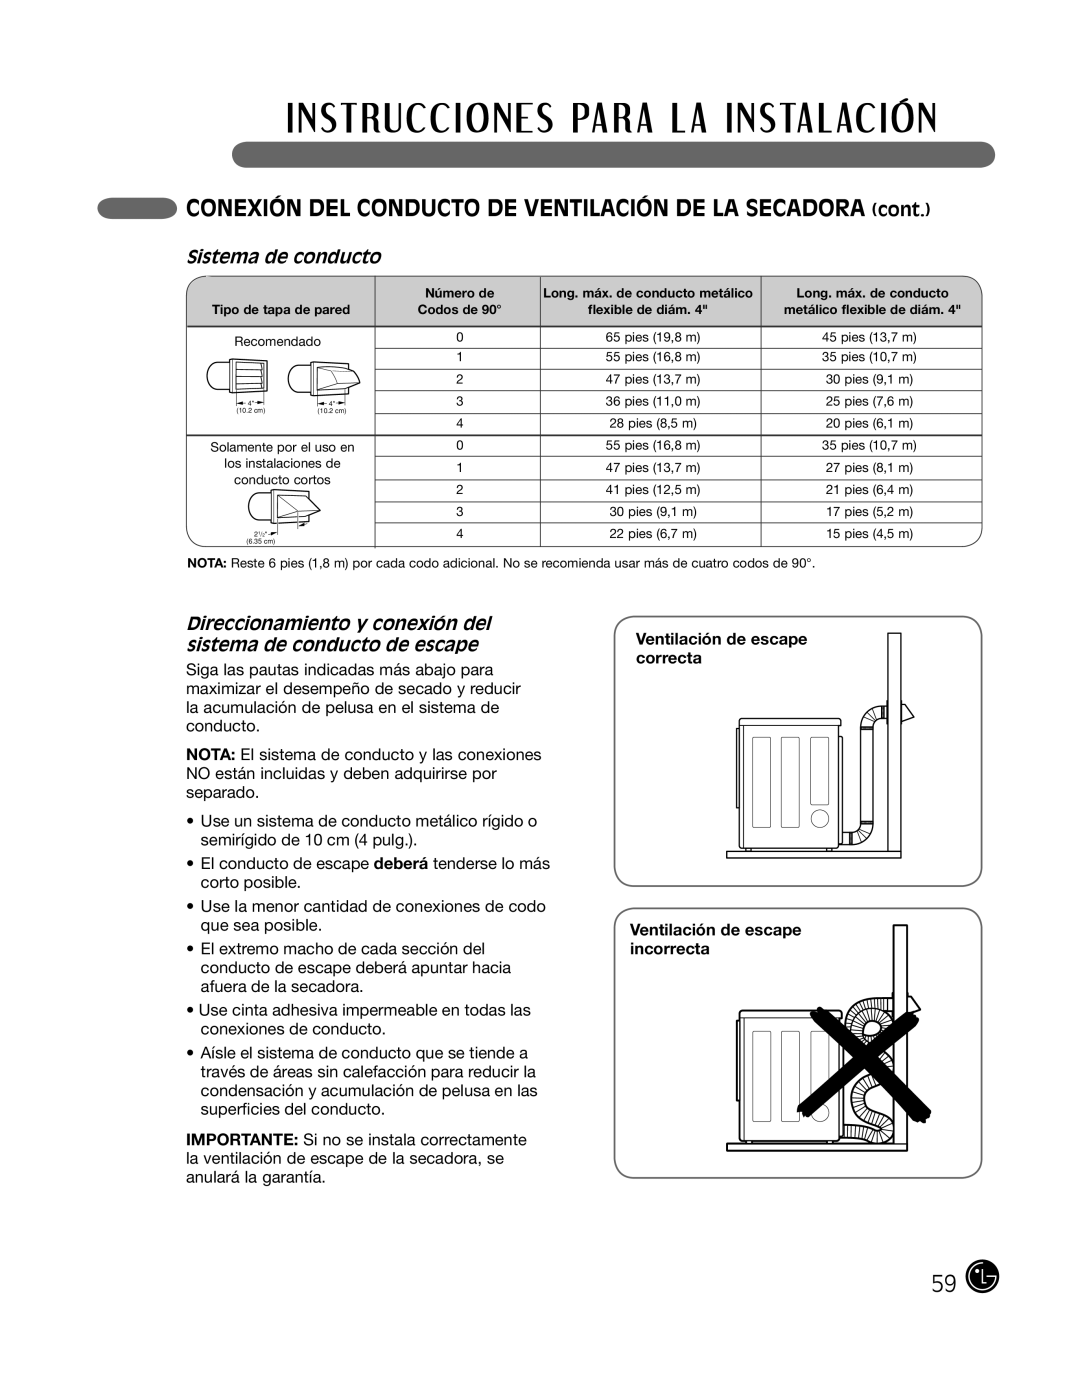 LG Electronics P154 manual CONEXIÓN DEL CONDUCTO DE VENTILACIÓN DE LA SECADORA cont, Sistema de conducto 